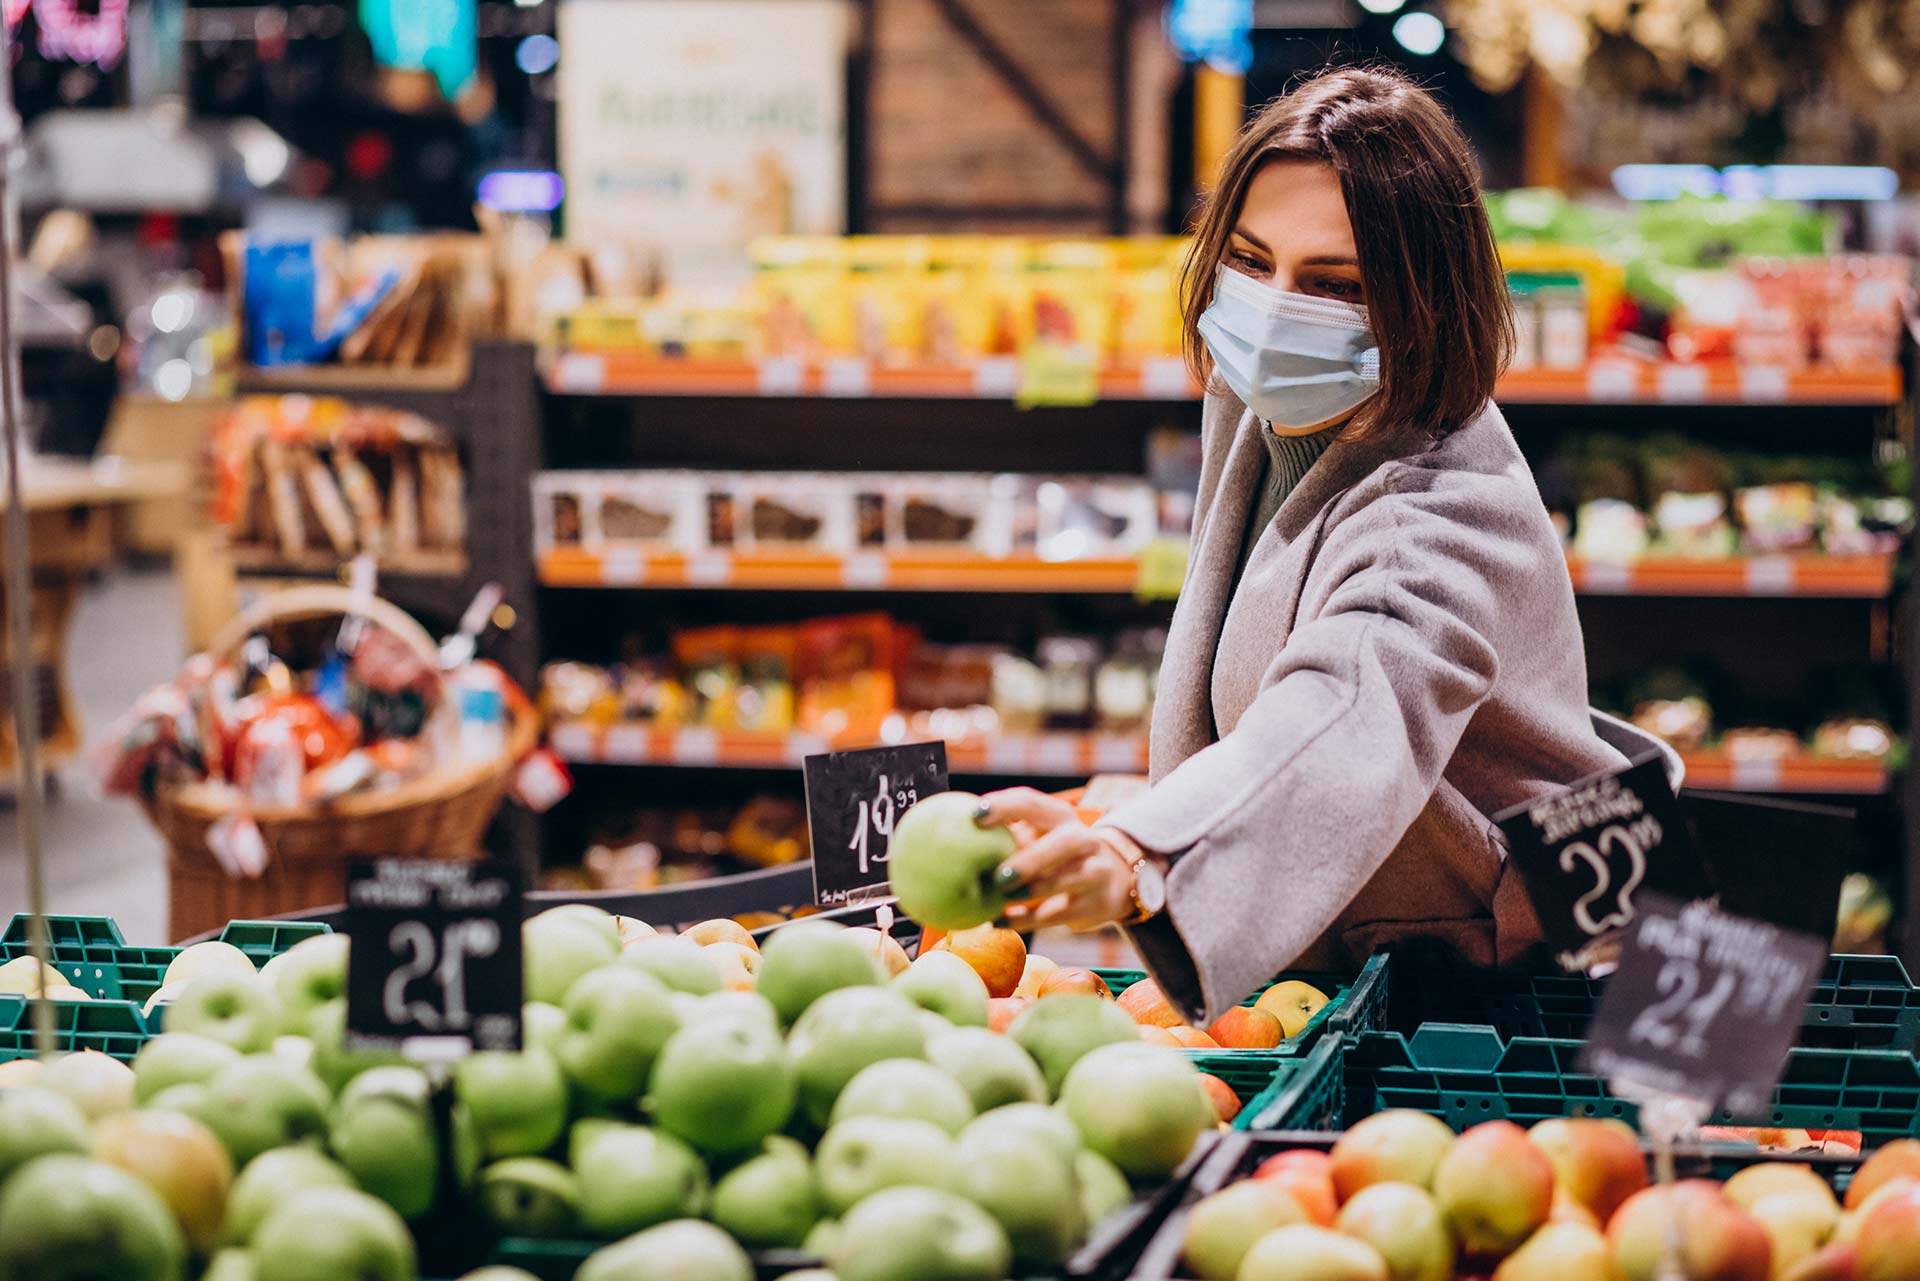 Estudio de Accenture identifica 5 mitos que surgieron sobre el consumidor producto de la pandemia